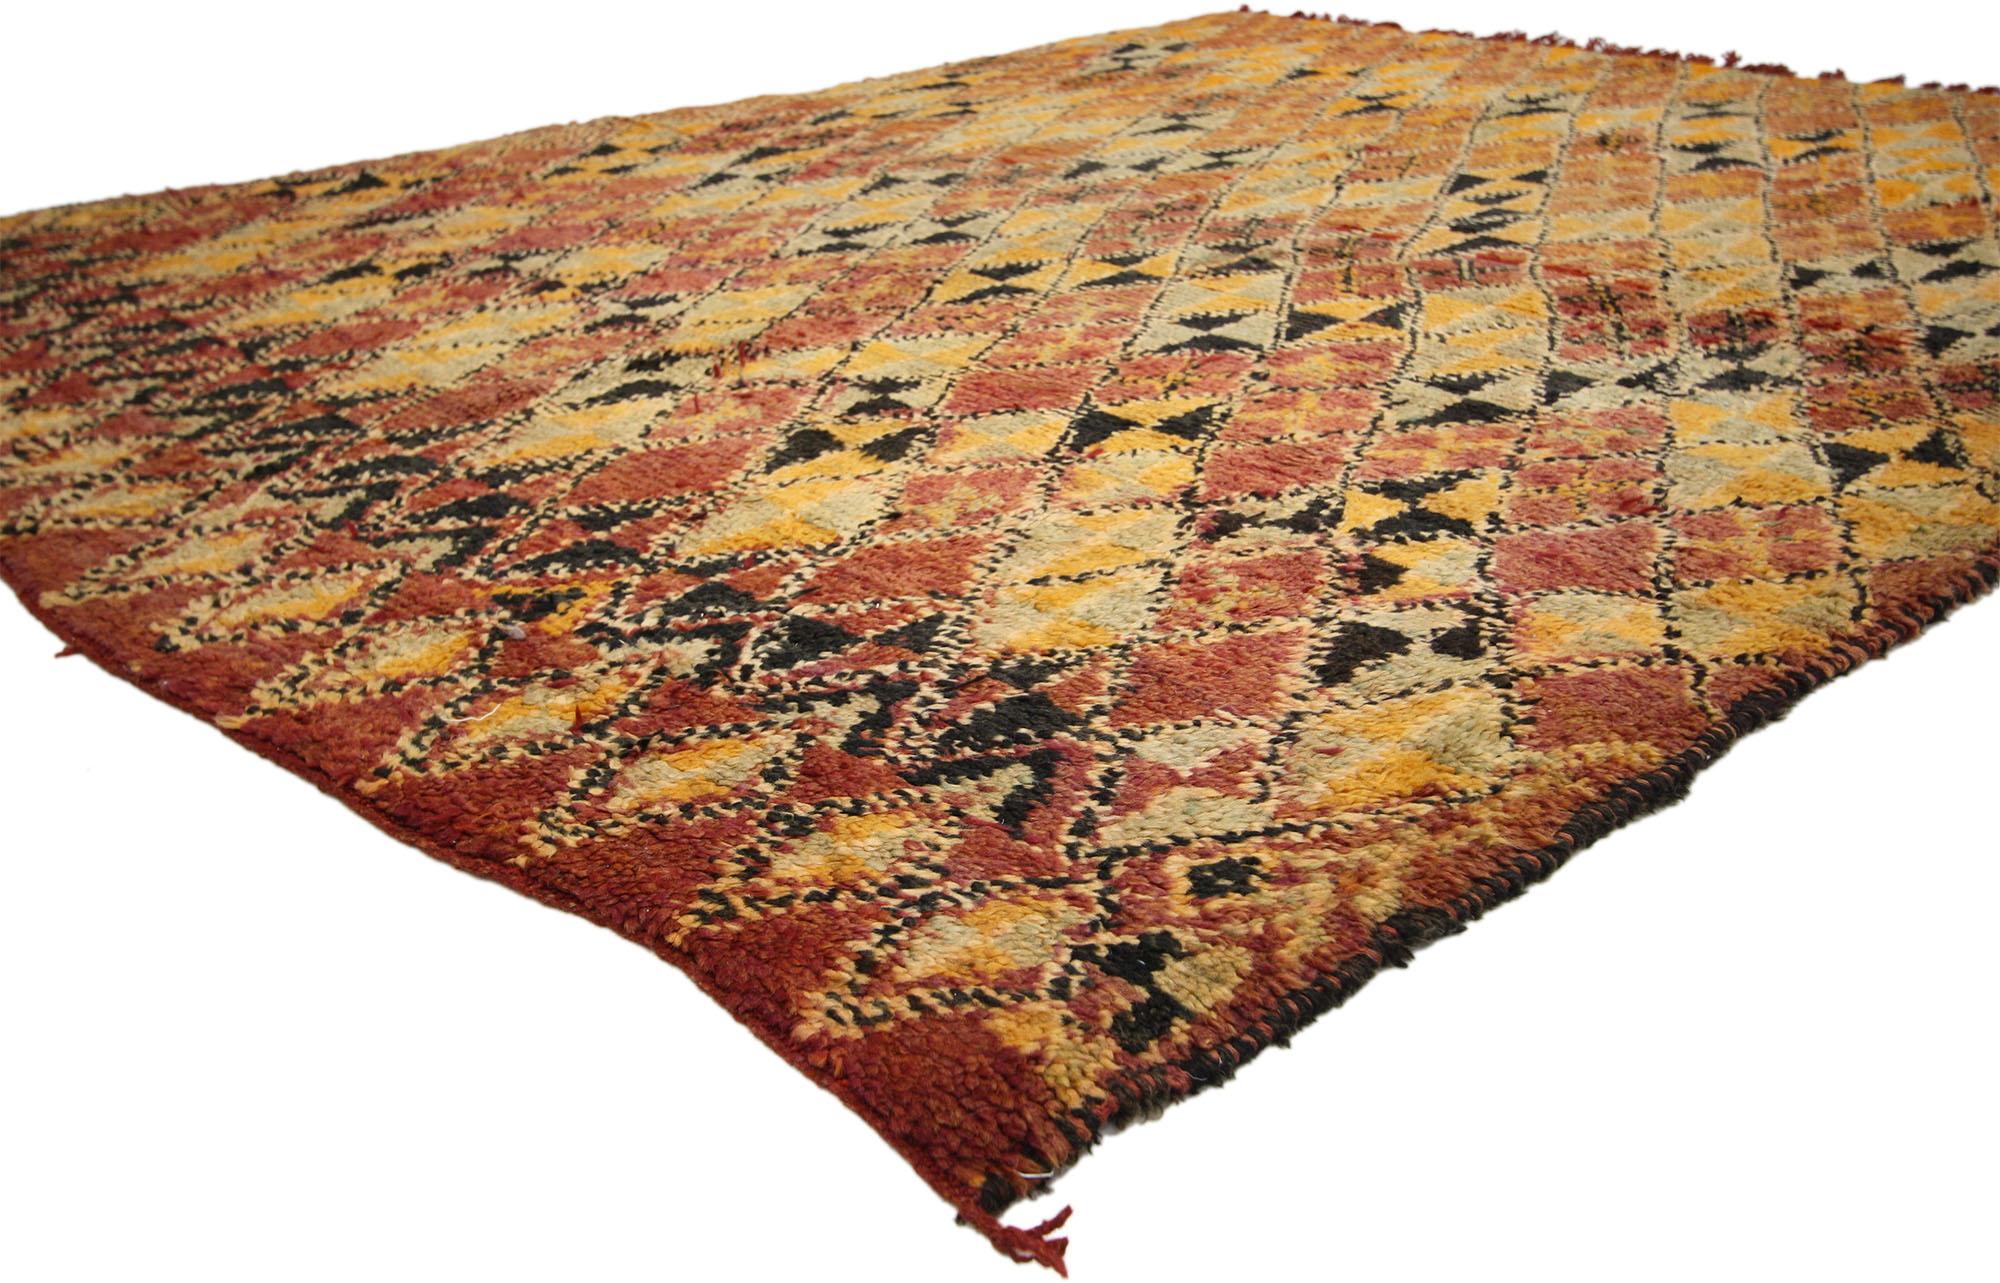 74516 Vintage Berber Moroccan Rug with Modern Style 06'05 x 08'06. Chaleureux et accueillant, ce tapis marocain berbère vintage en laine nouée à la main est...  une vision captivante de la beauté tissée. Le champ abrasé présente un motif géométrique